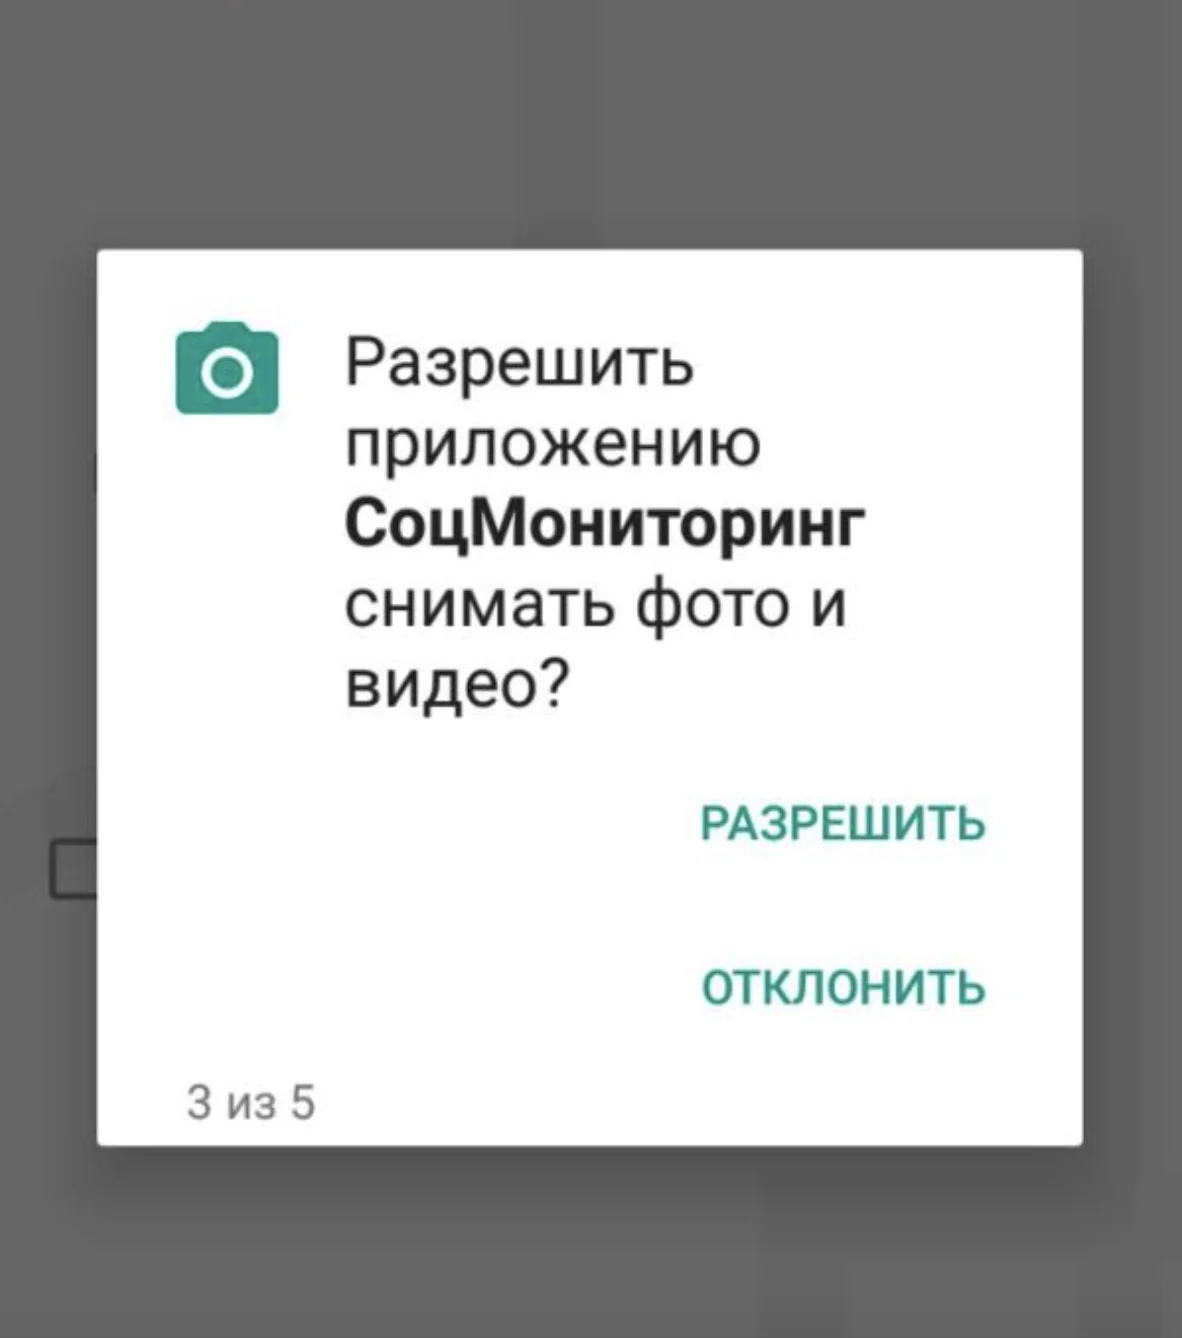 Мэрия Москвы с помощью приложения будет следить за людьми на карантине - фото 1